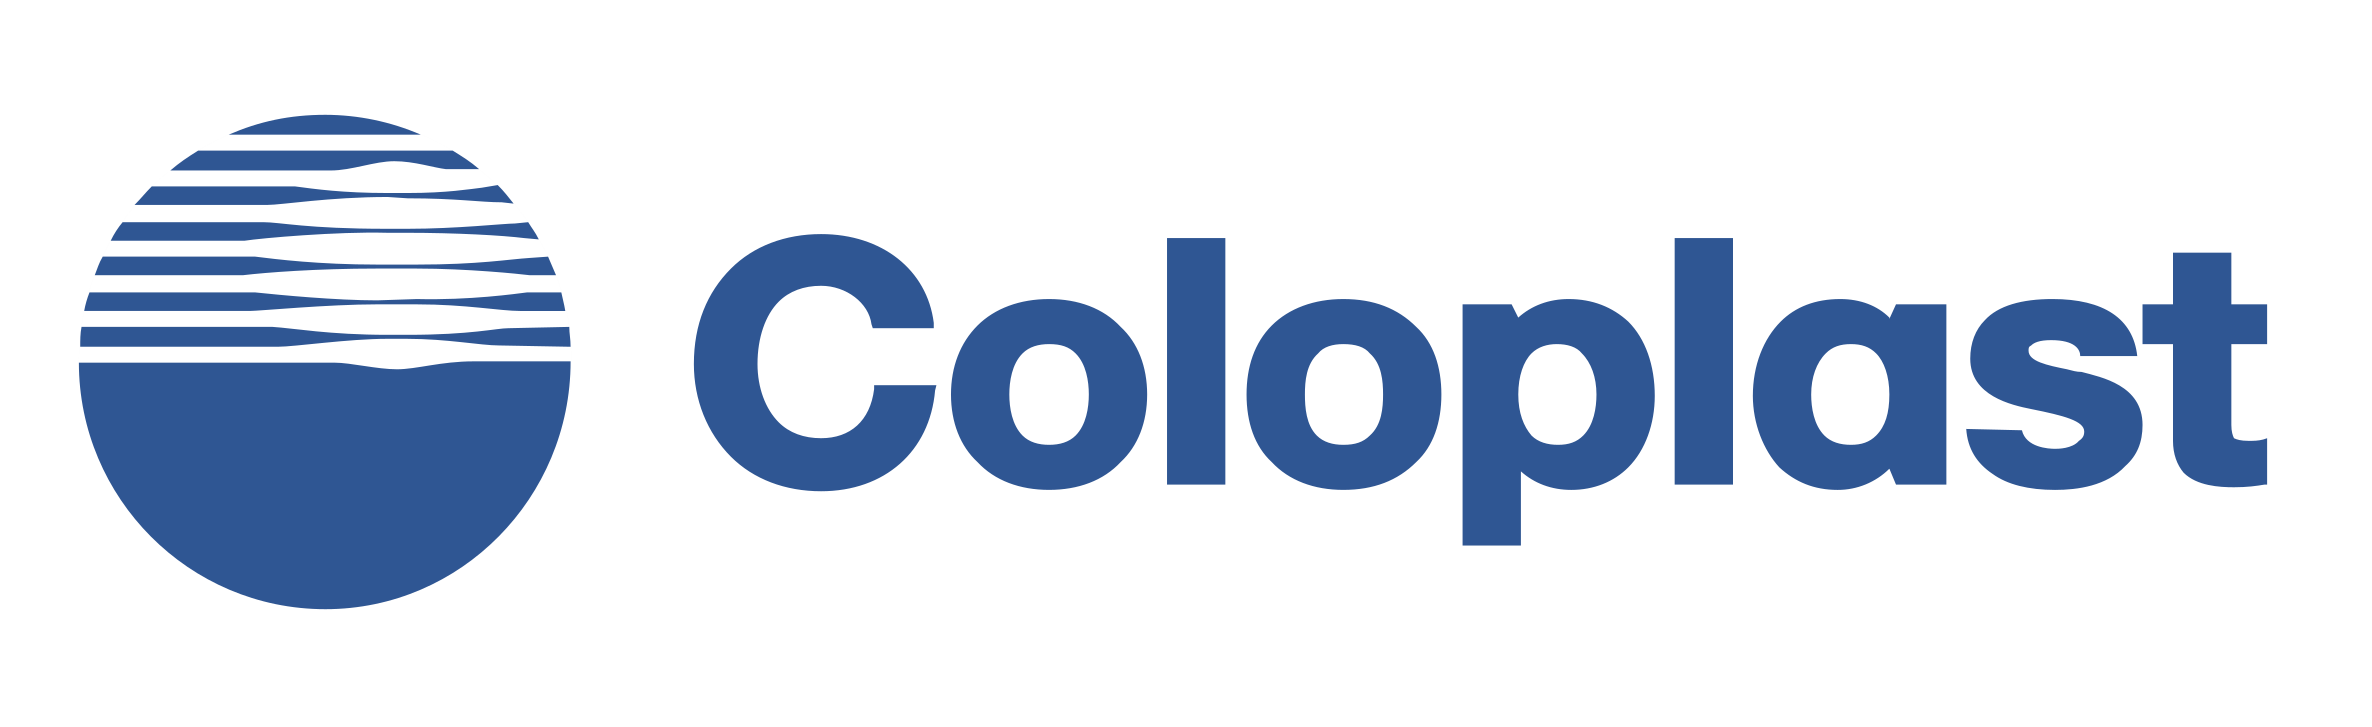 coloplast_logo